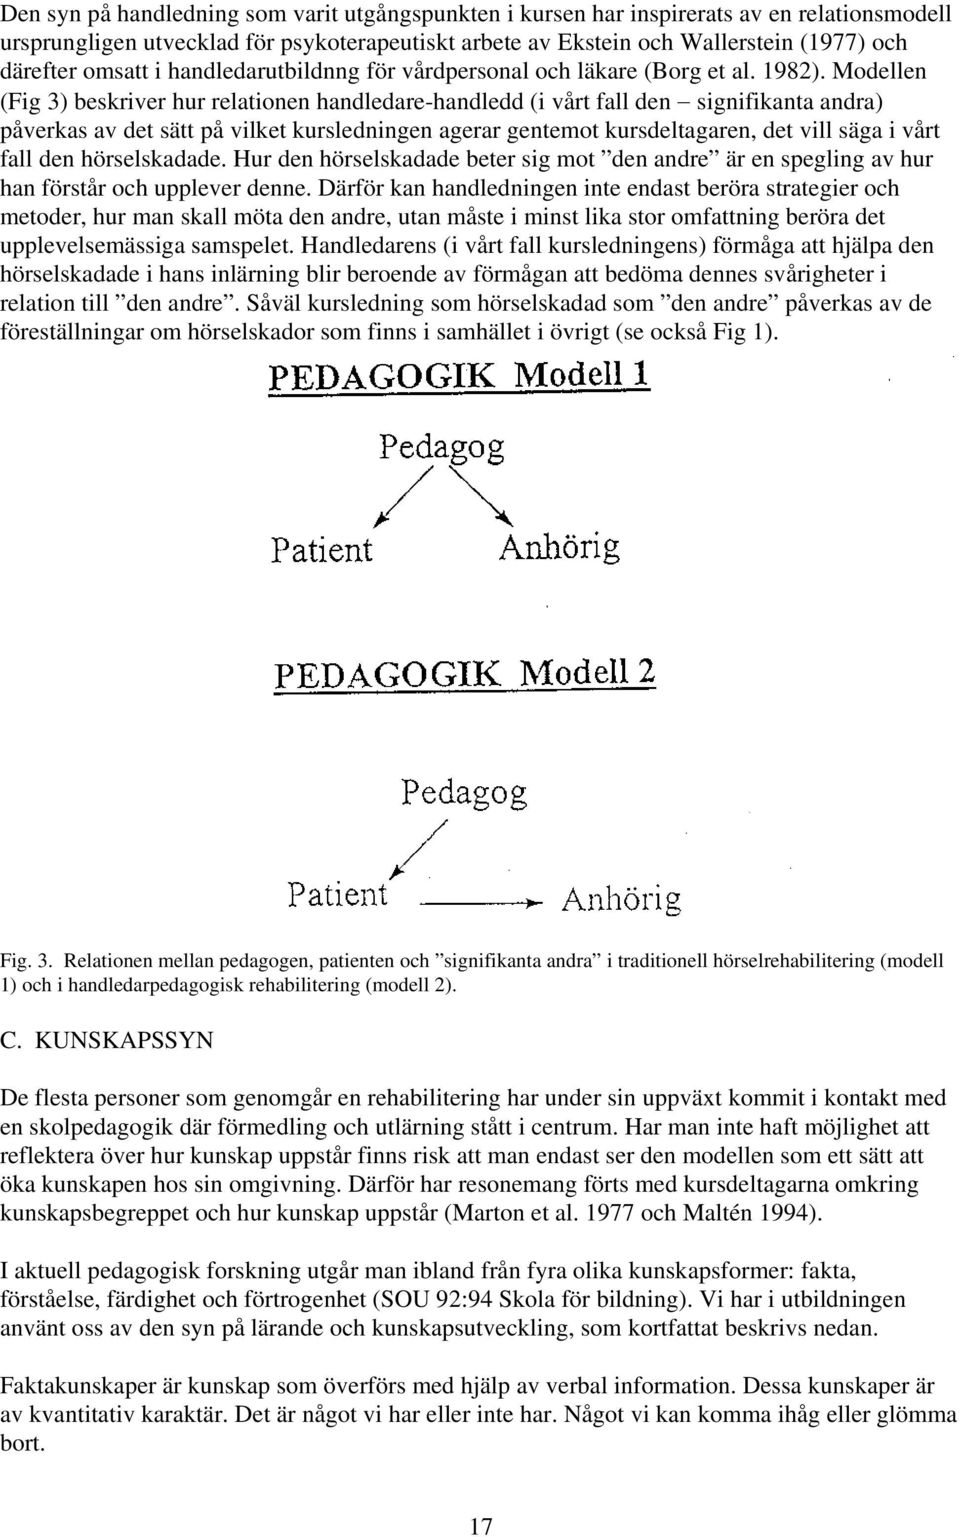 Modellen (Fig 3) beskriver hur relationen handledare-handledd (i vårt fall den signifikanta andra) påverkas av det sätt på vilket kursledningen agerar gentemot kursdeltagaren, det vill säga i vårt